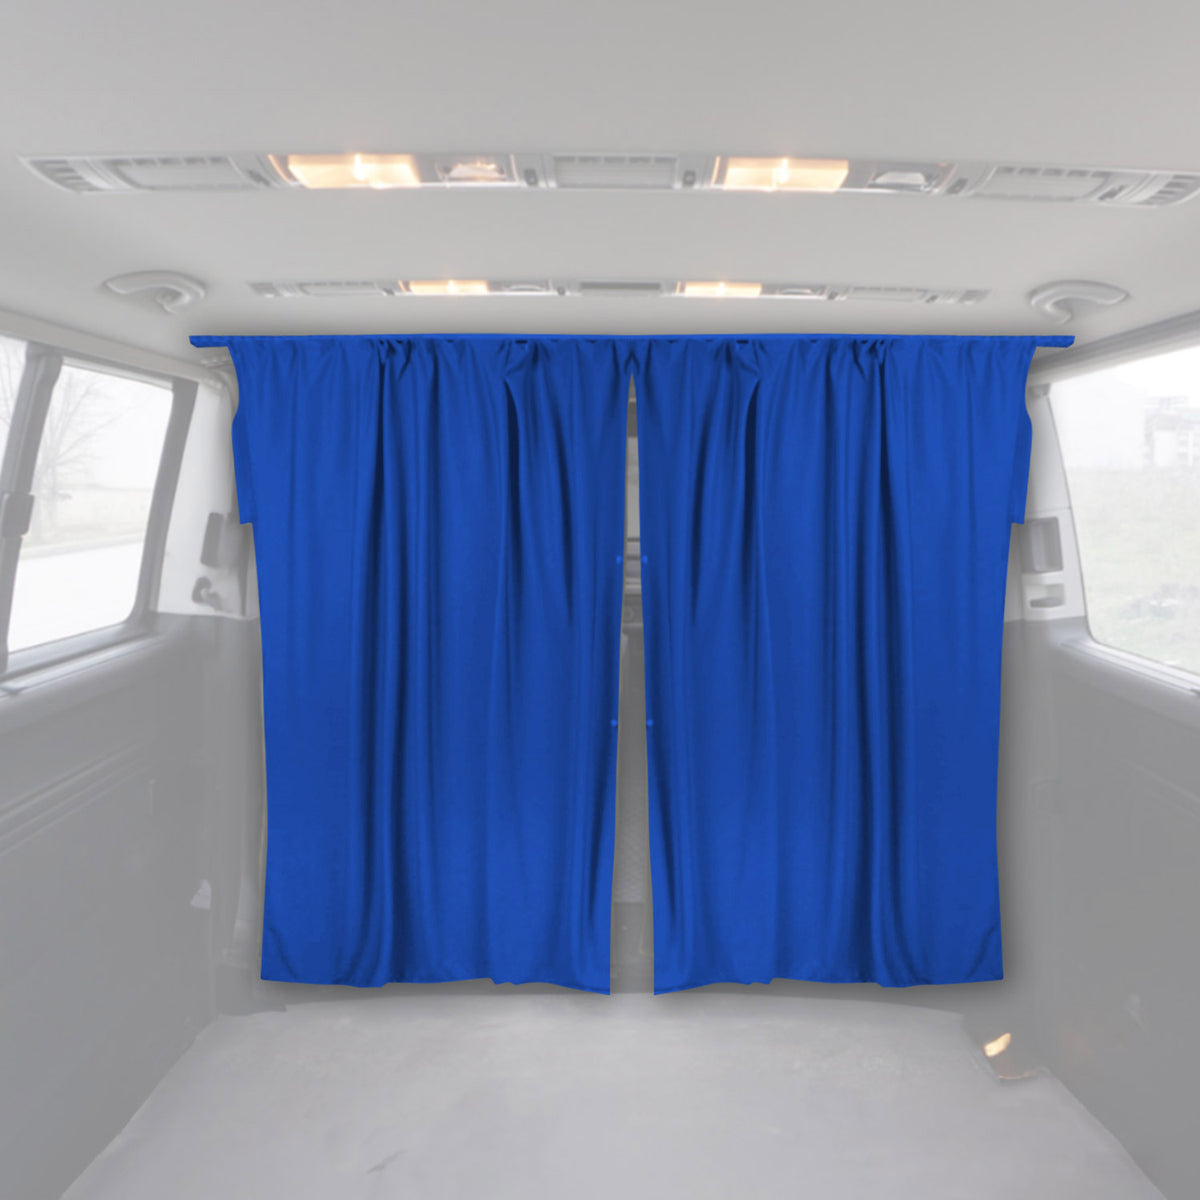 Fahrerhaus Führerhaus Gardinen Sonnenschutz für Citroen Jumper H2 Blau 2tlg